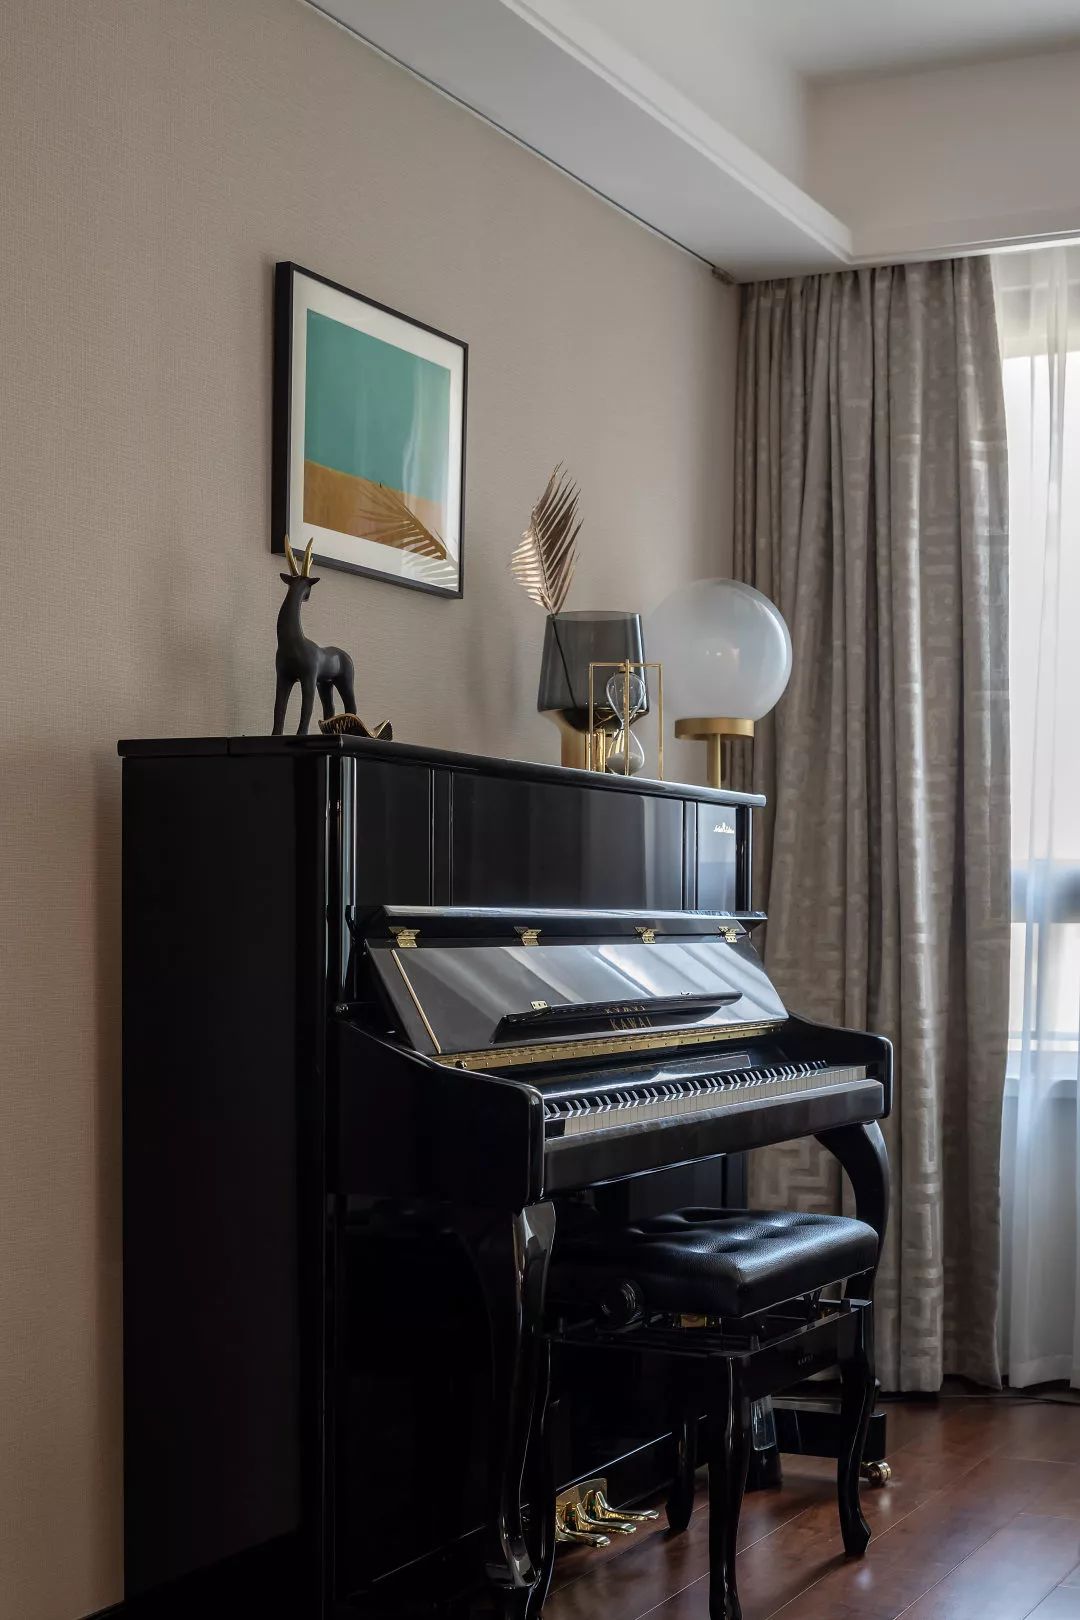 钢琴的设立,使得客厅空间更具氛围感